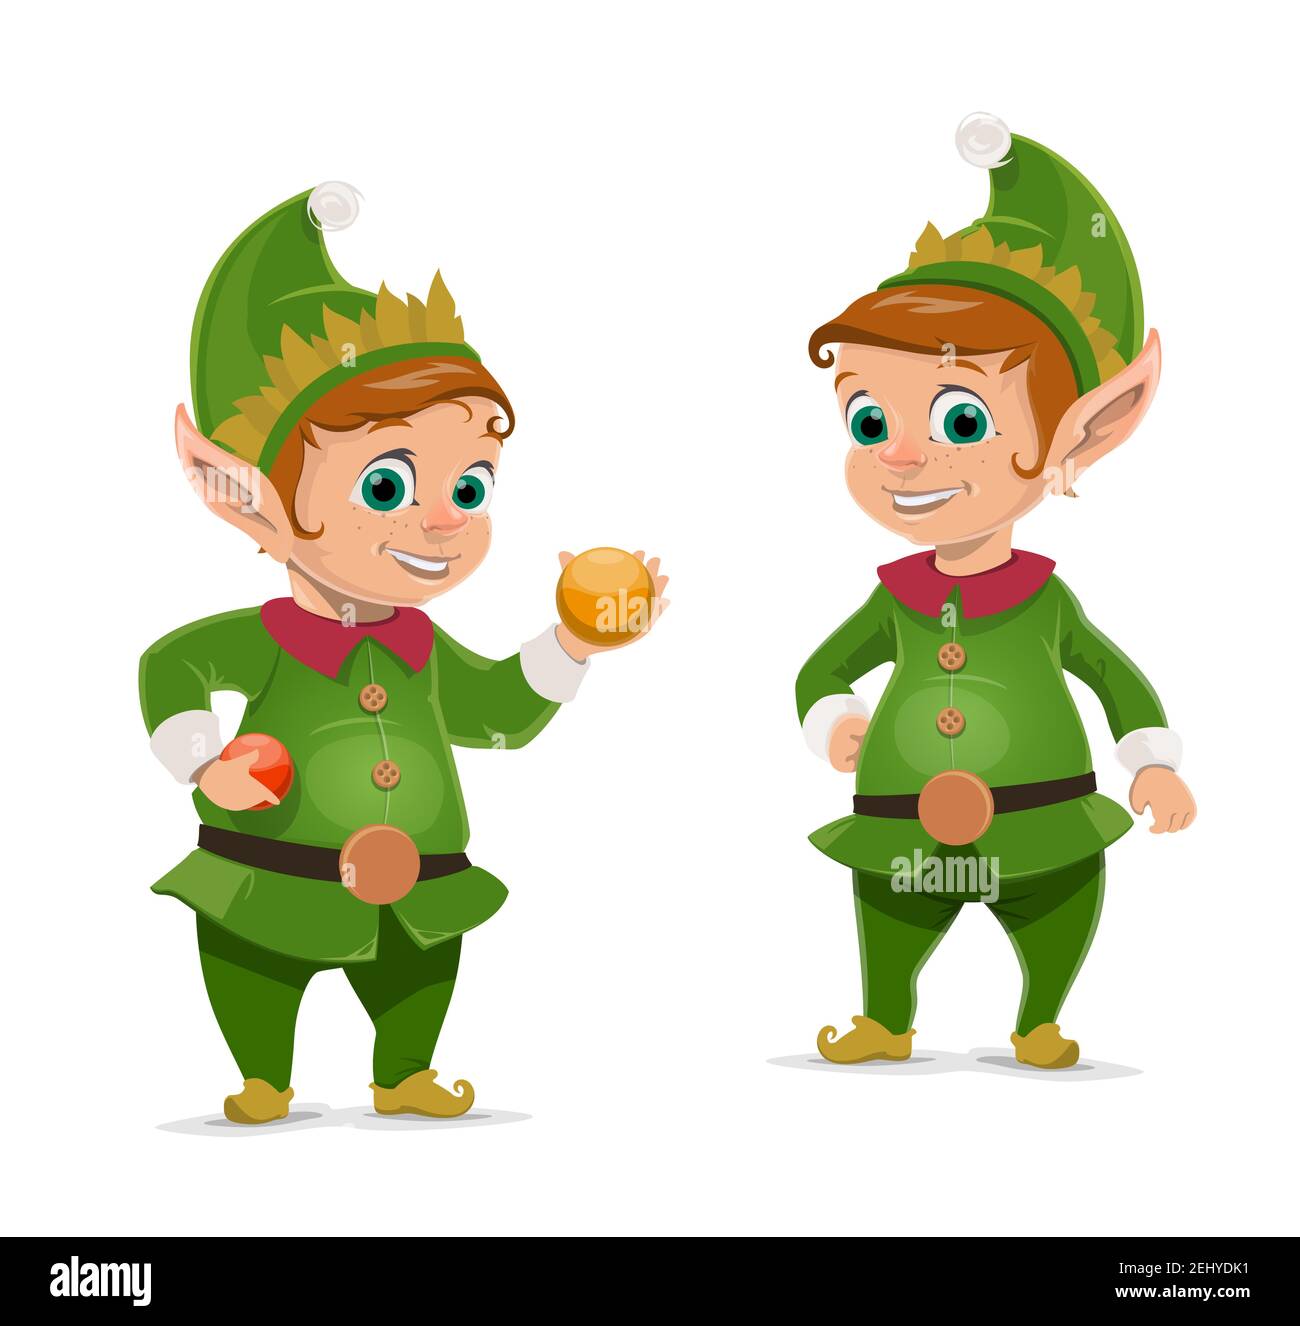 Personajes de dibujos animados de elfos de Navidad de los ayudantes de Santa  Claus. Enanas vectoriales o pequeños pueblos en trajes y sombreros verdes  con bolas de árbol y bolas de Navidad.